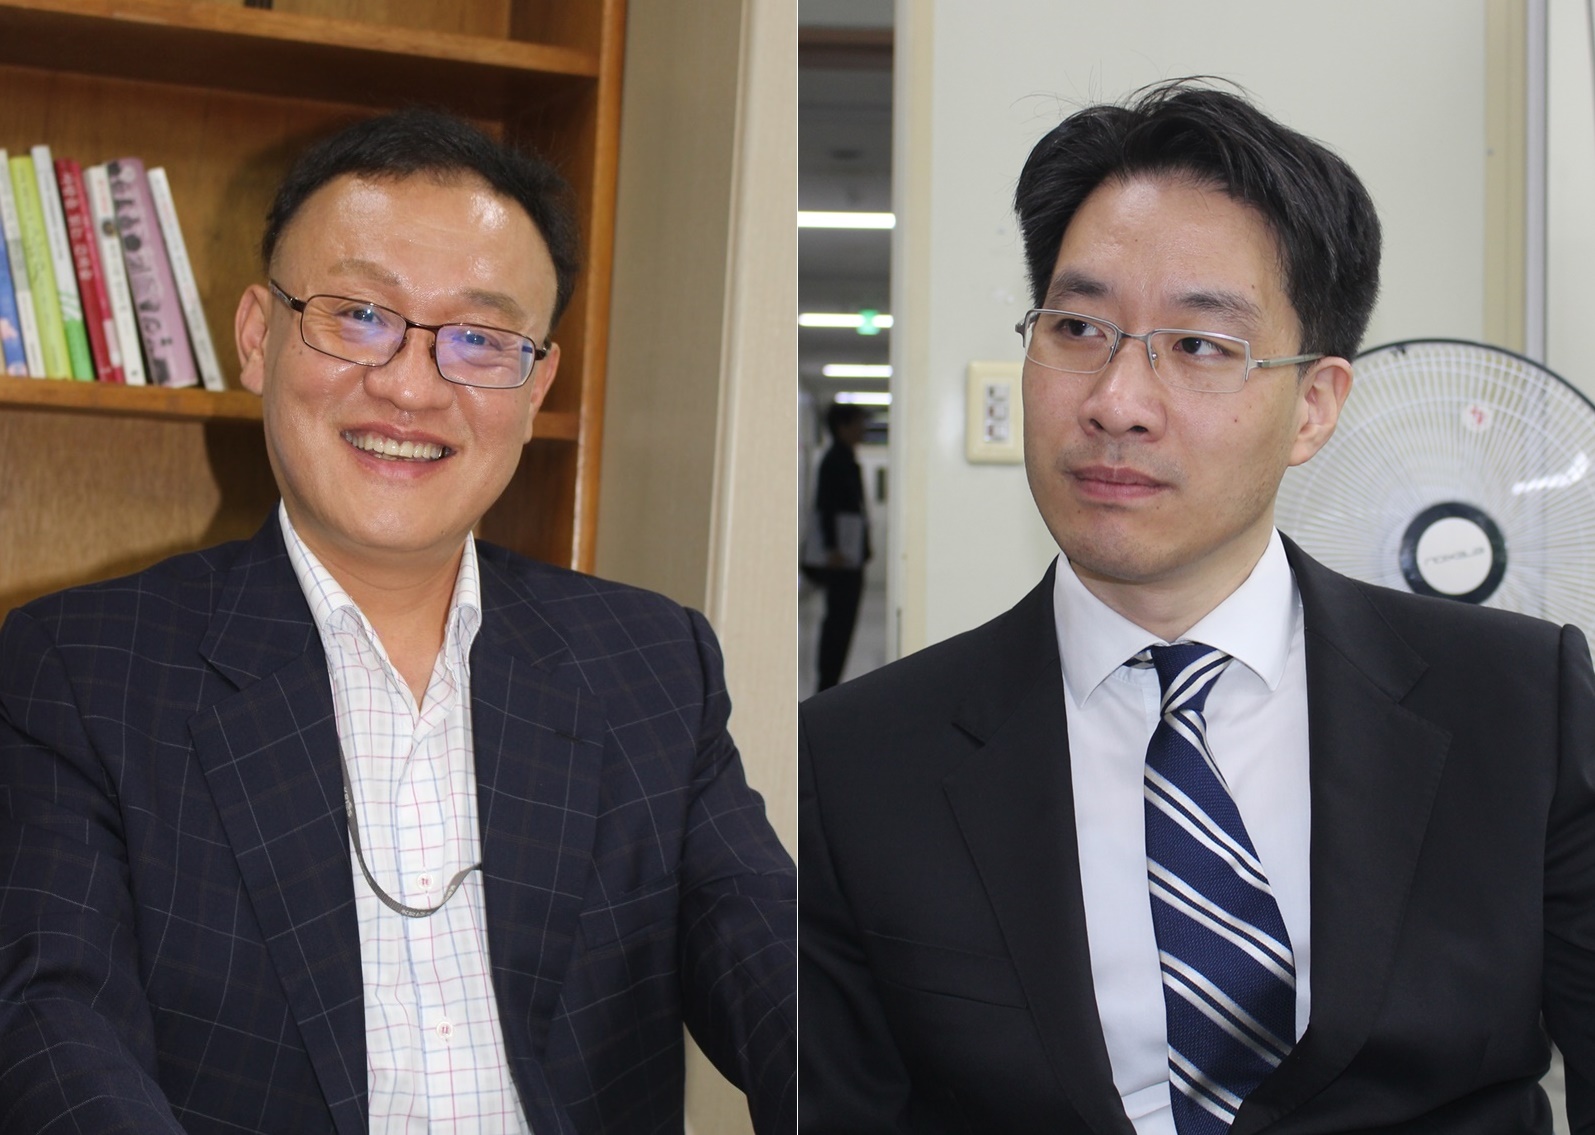 김용태 표준연 박사(좌)와 김세준 대전성모병원 교수(우)는 의료기기 측정표준의 중요성에 대해 소통했다.